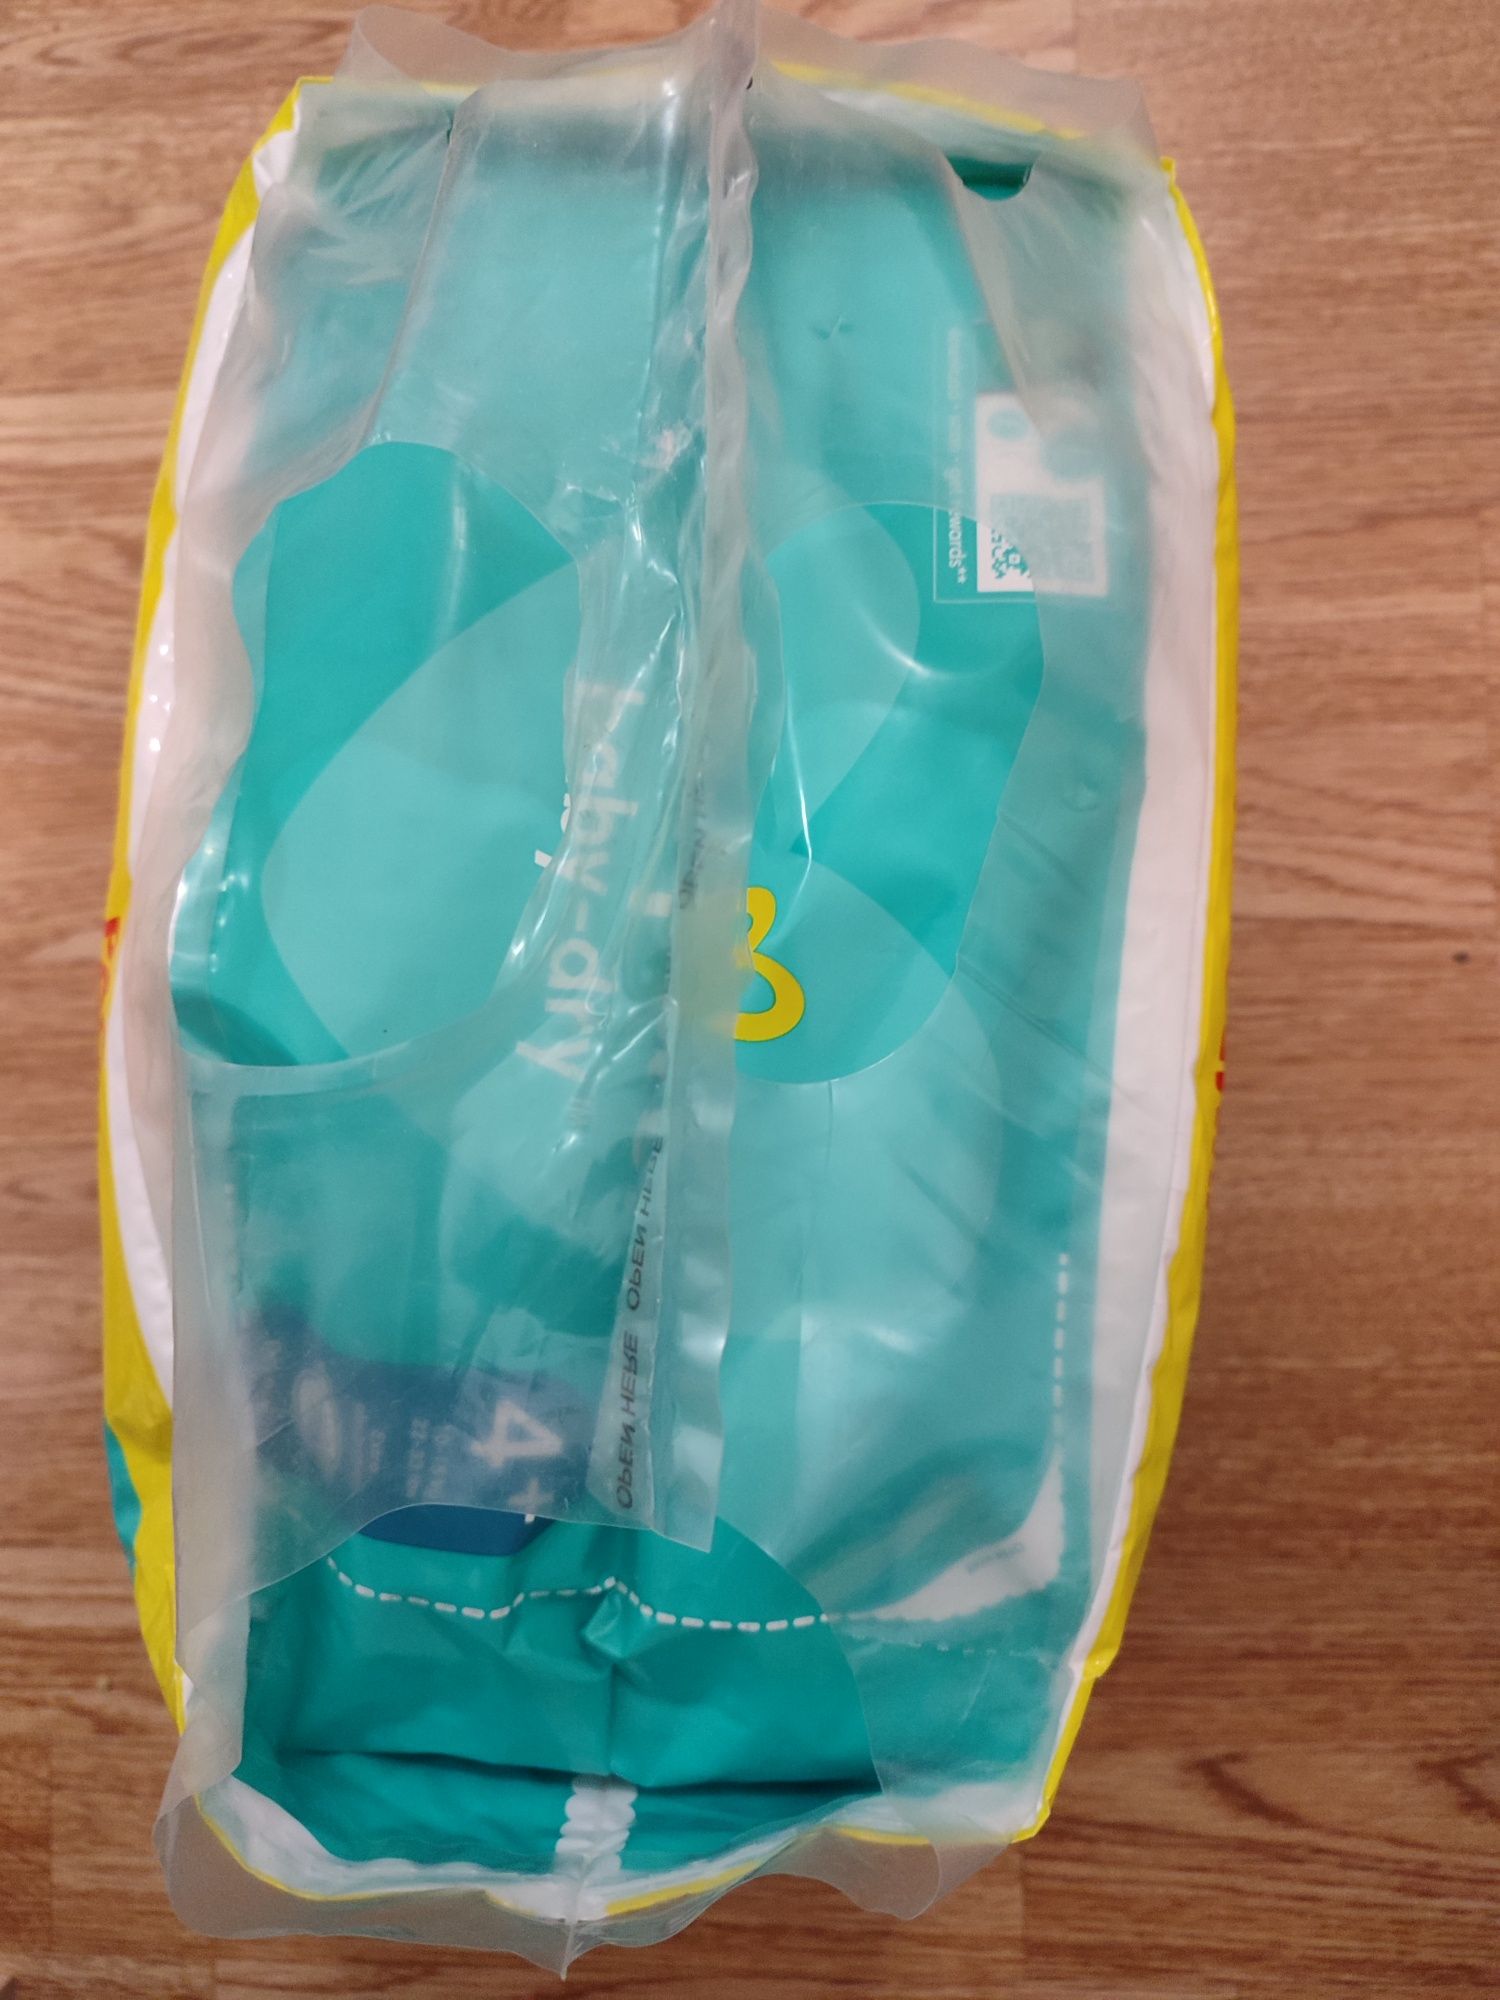 Підгузки Pampers 4+ Jumbo pack Baby-Dry